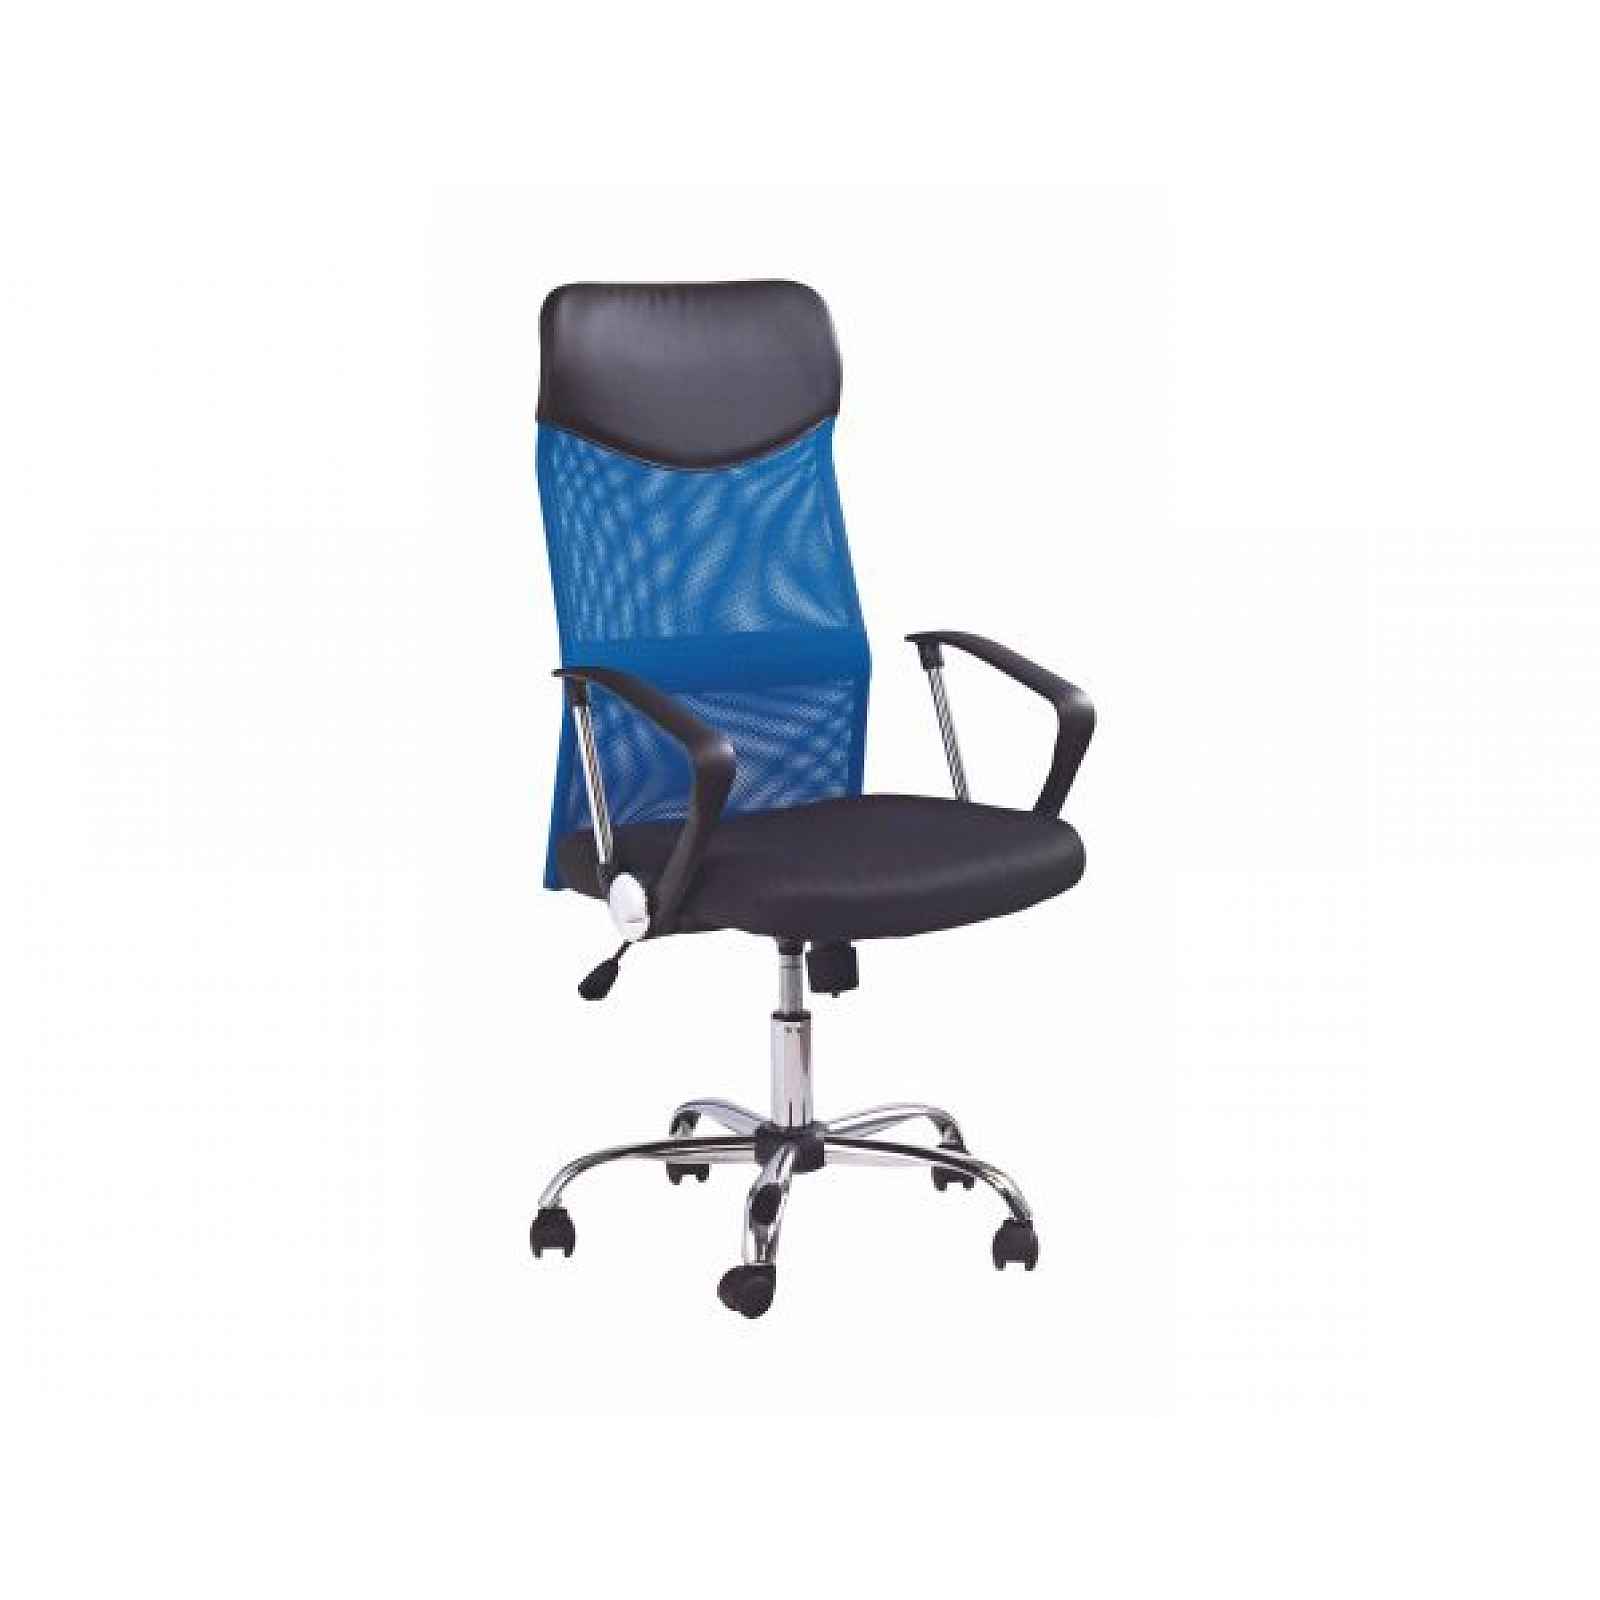 Kancelářská židle Vire modré - 61x63x110-120cm